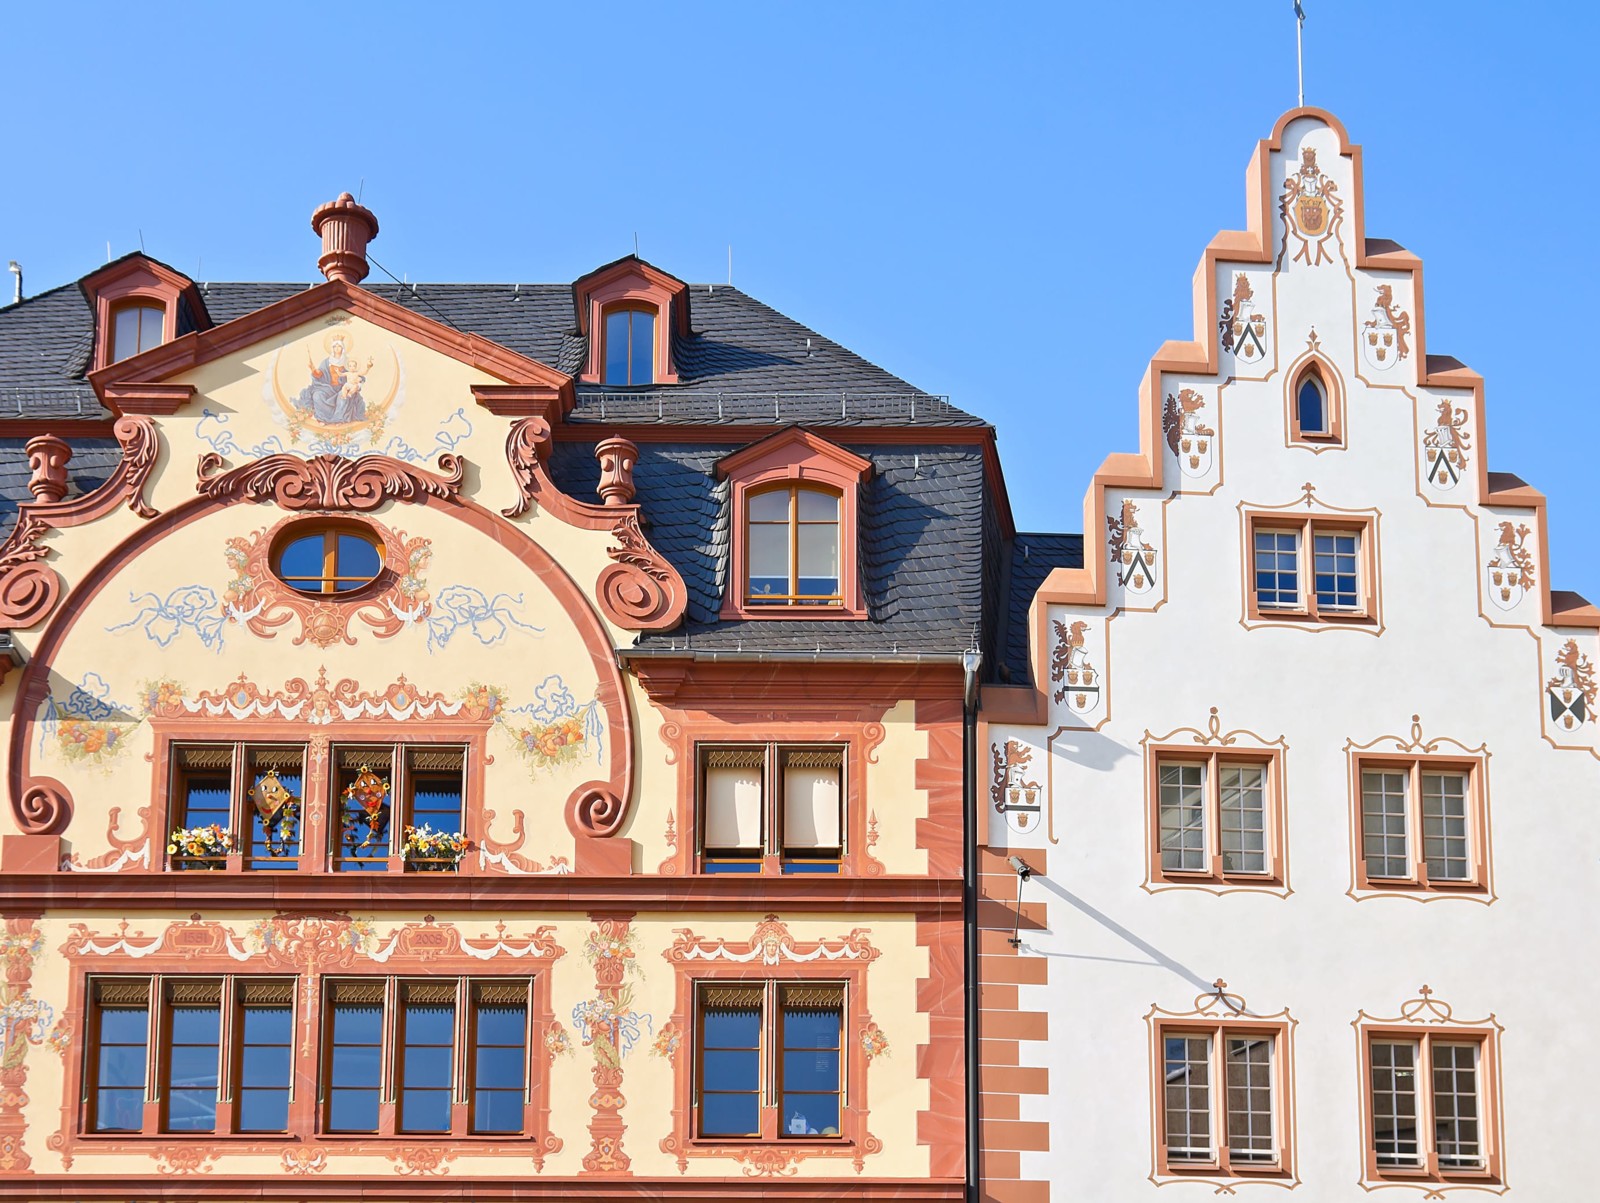 Mainzer Markthäuser